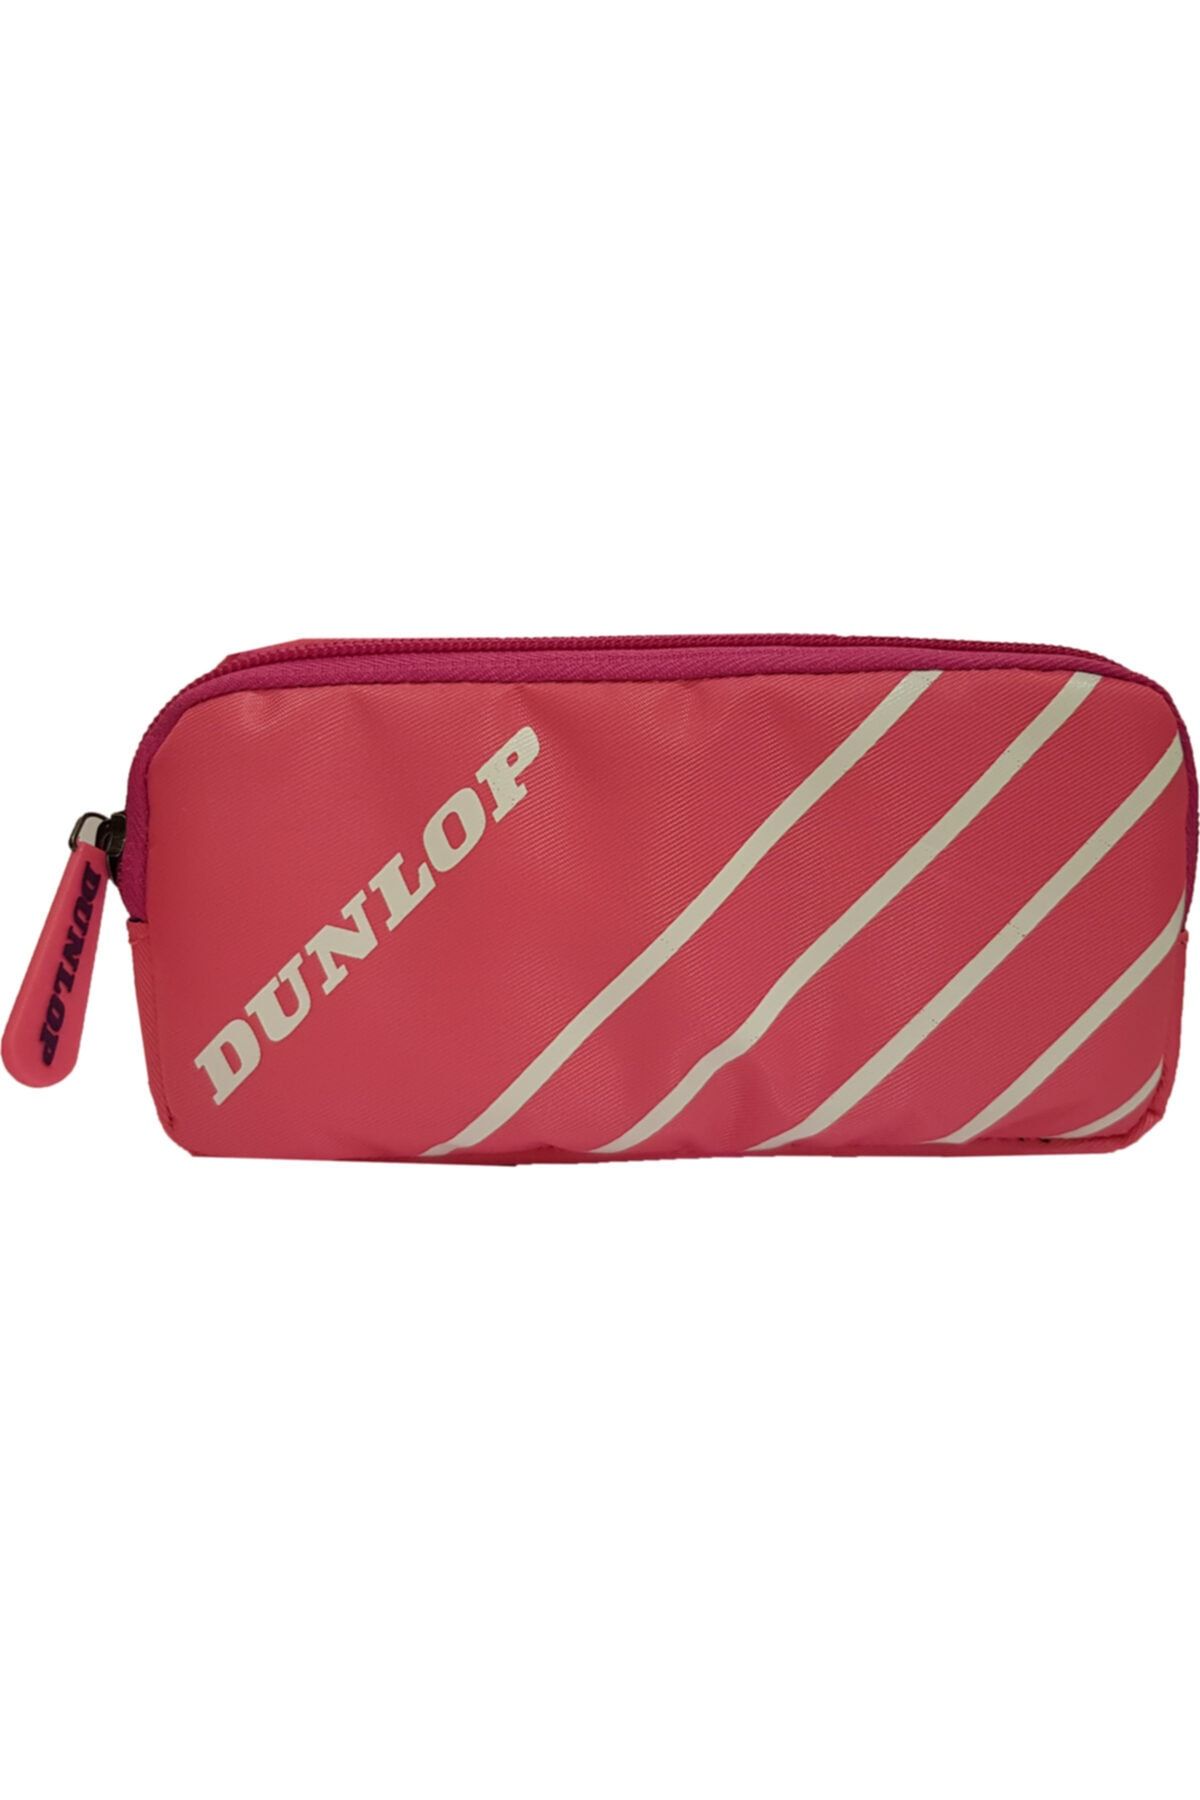 Dunlop Dpklk20504 Kalem Kutusu